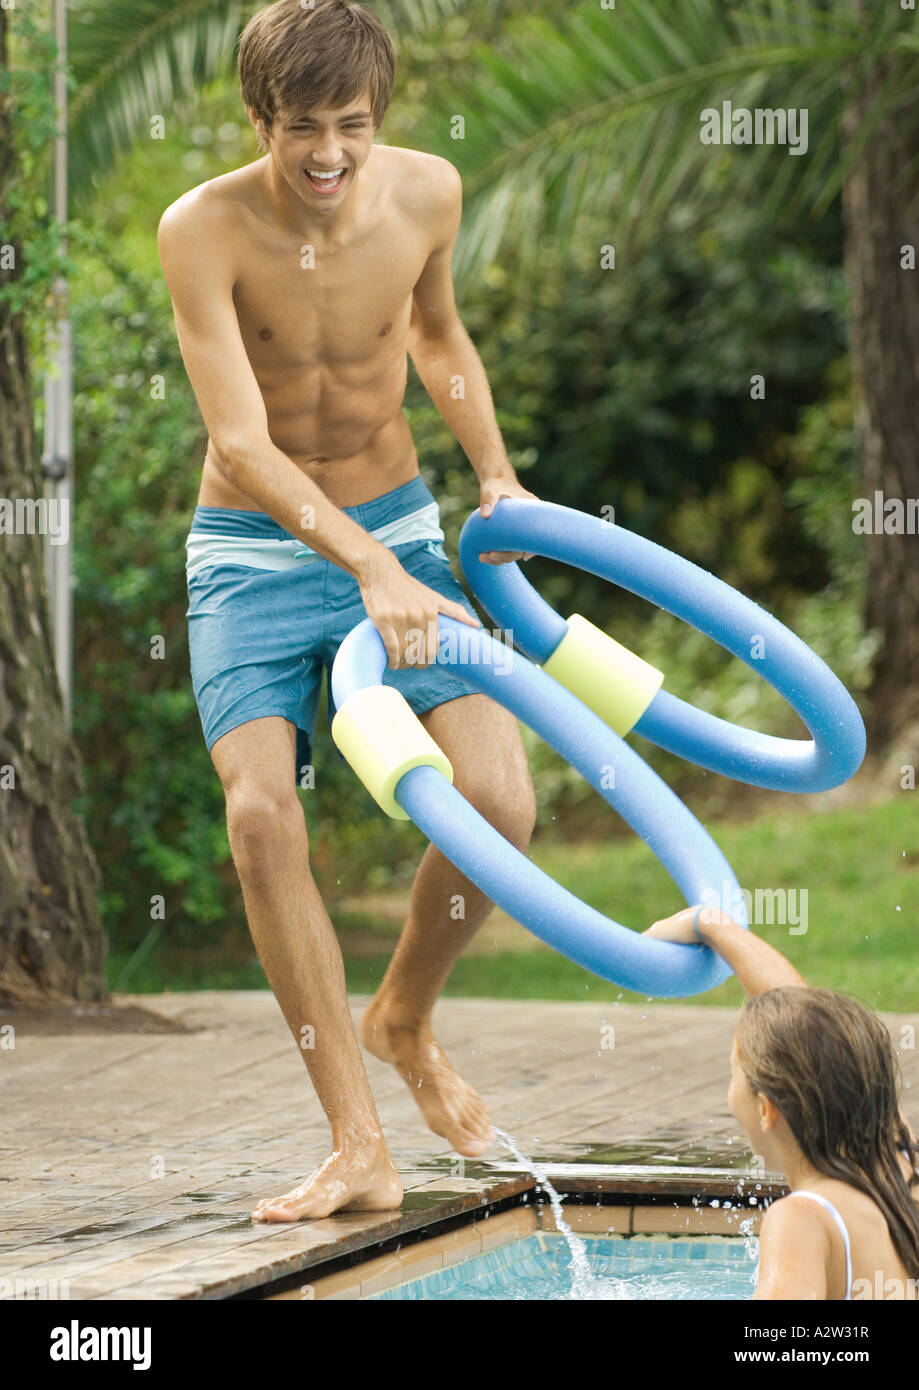 Heranwachsenden Jungen Spielen Mit Jüngeren Schwester Im Schwimmbad Stockfotografie Alamy